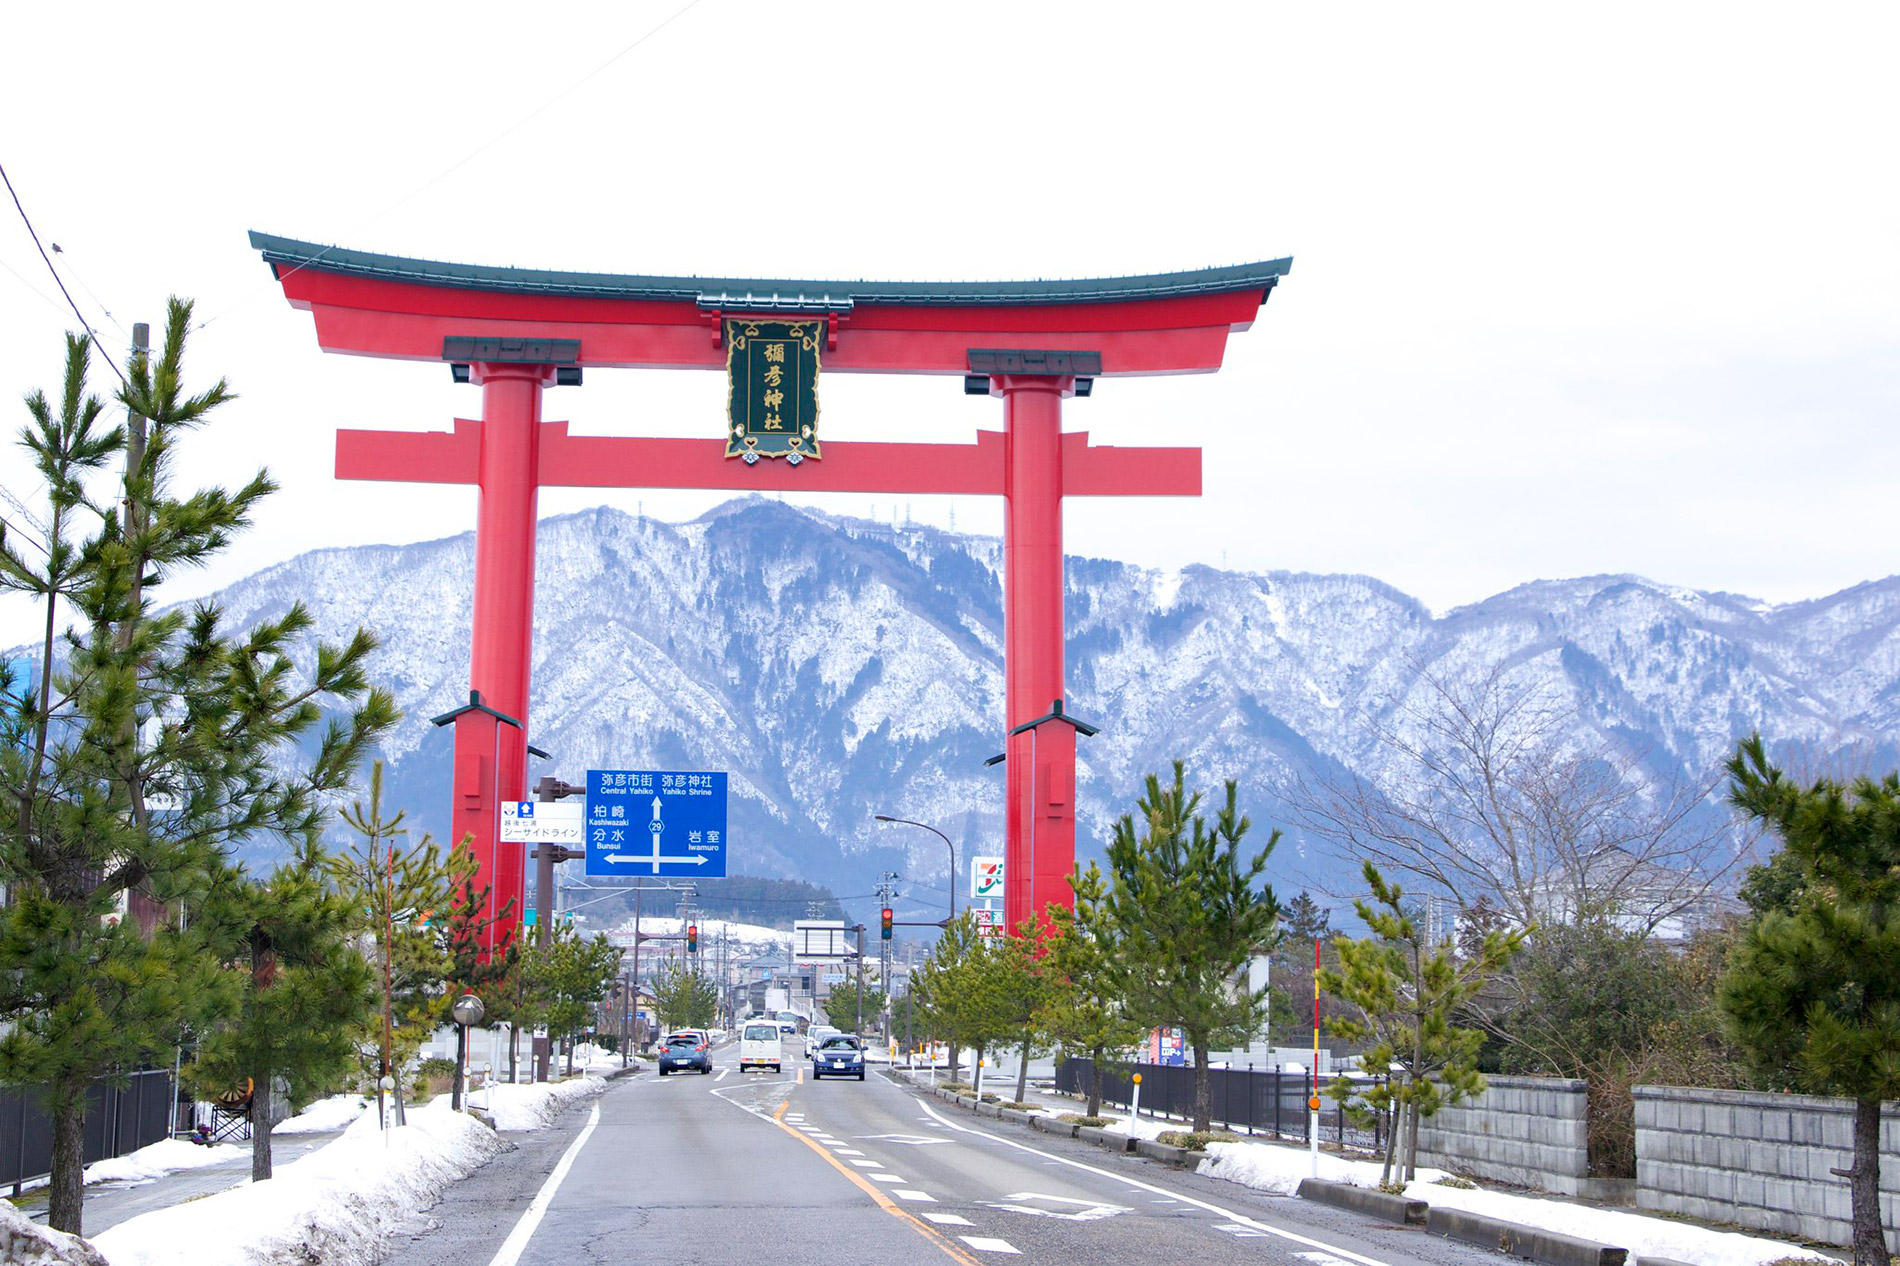 Riesiges torii vor tollem Hintergrund: das Schreintor des Yahiko-Schreins in Niigata. (Foto: foooomio, Flickr https://flic.kr/p/DGHPnG CC BY 2.0 https://creativecommons.org/licenses/by/2.0/)